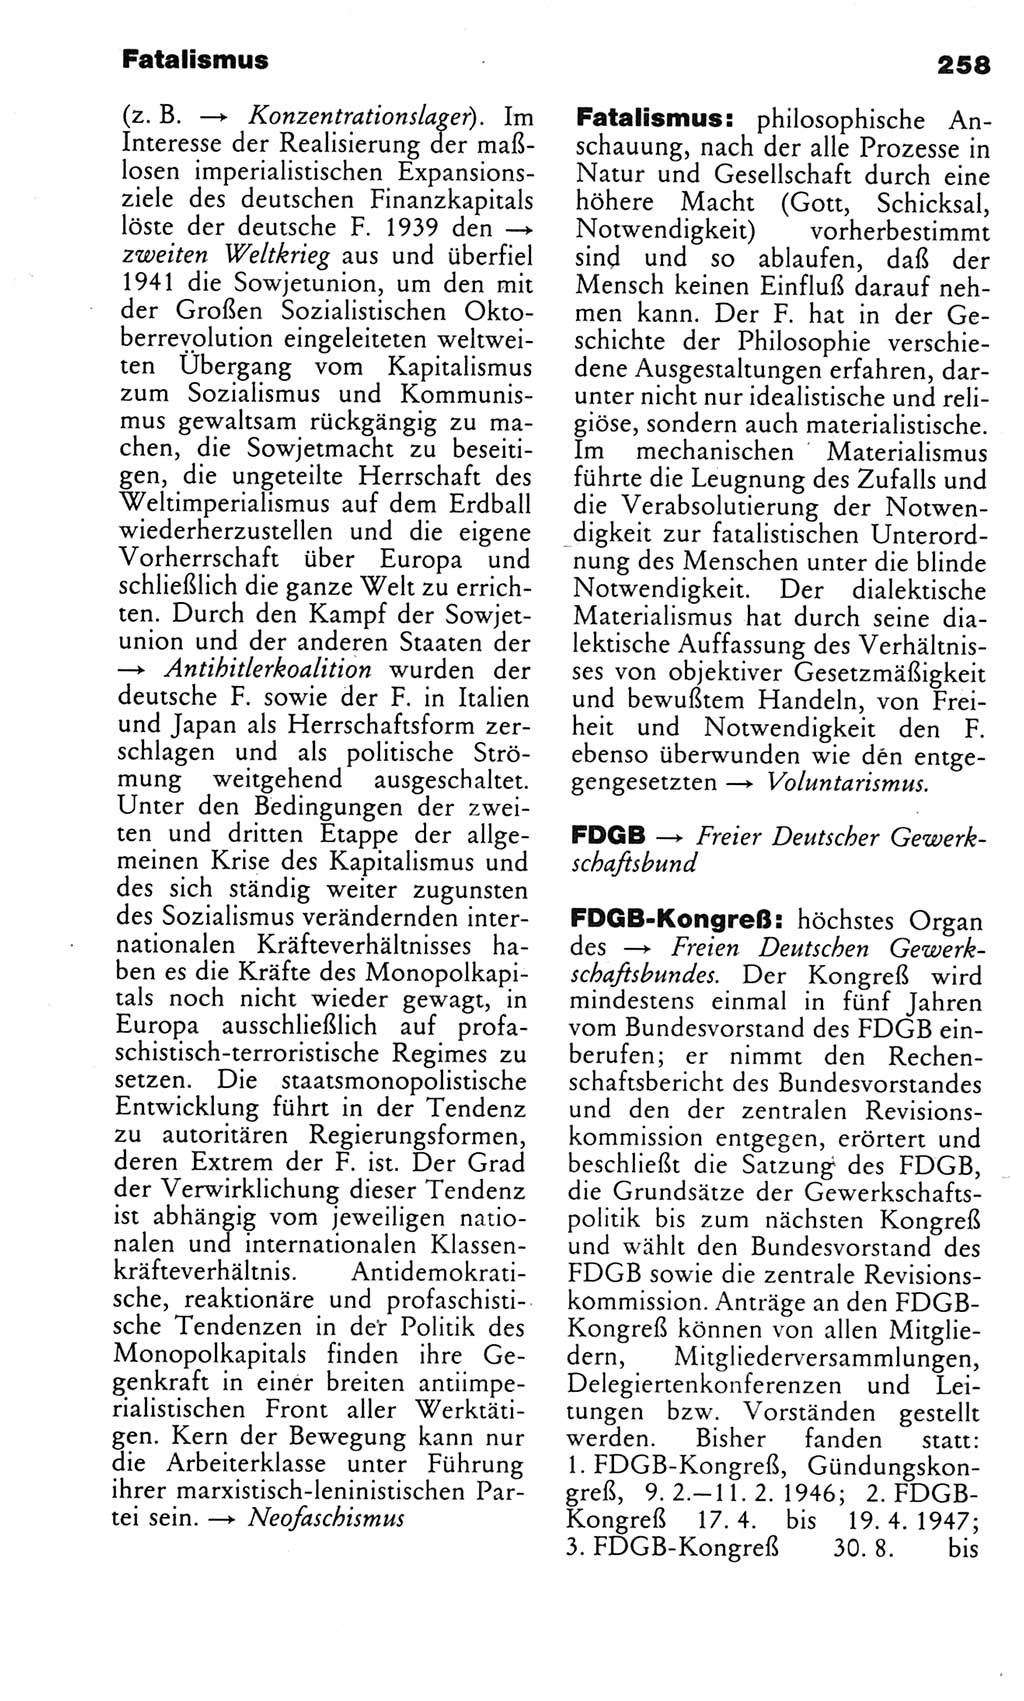 Kleines politisches Wörterbuch [Deutsche Demokratische Republik (DDR)] 1983, Seite 258 (Kl. pol. Wb. DDR 1983, S. 258)